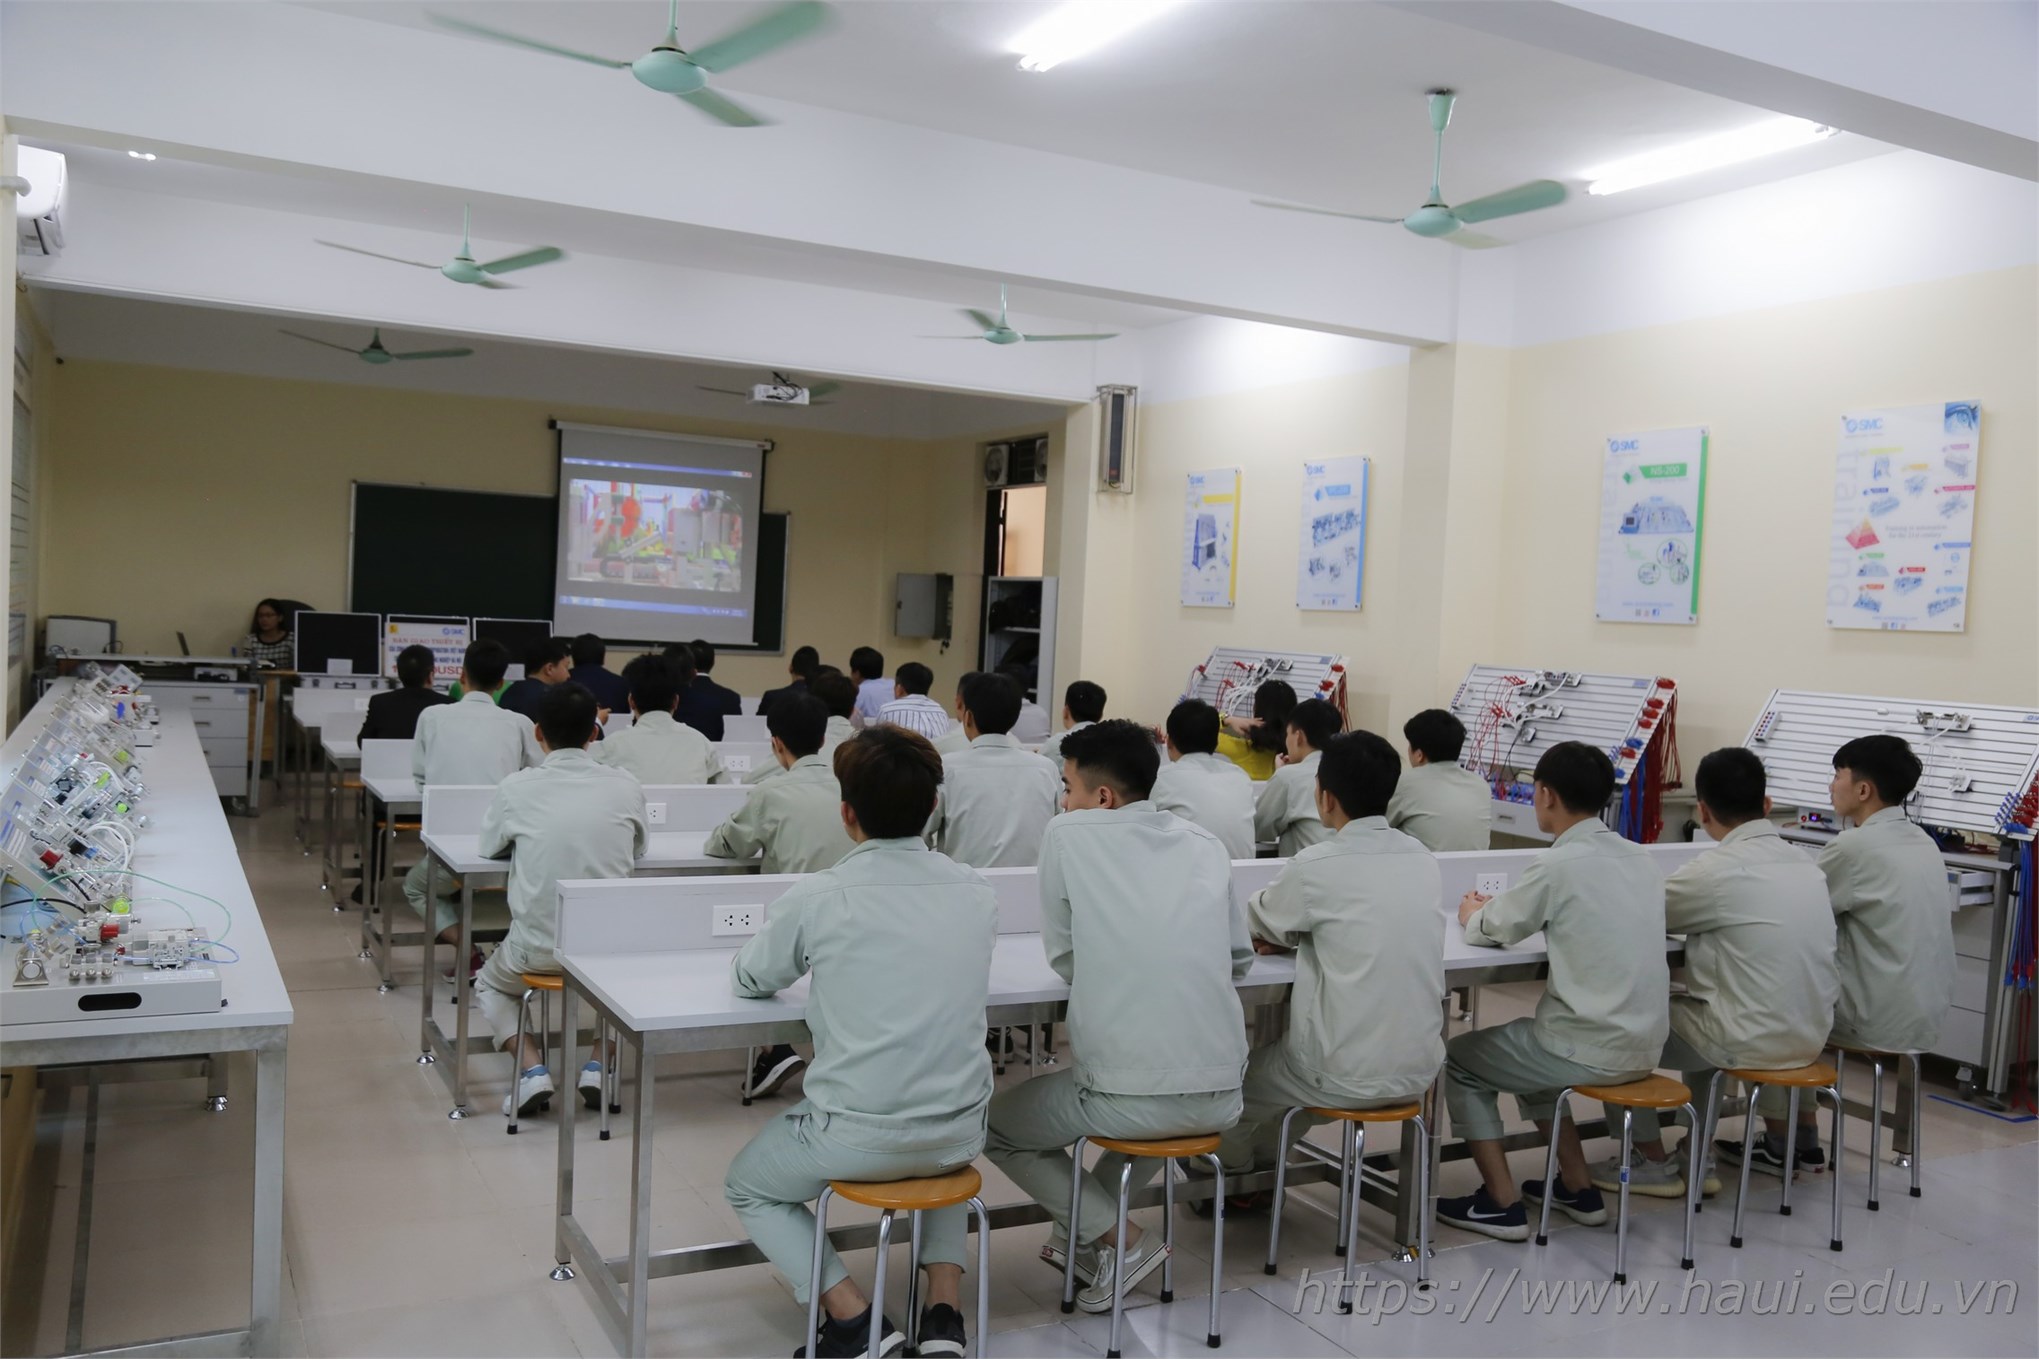 Trung tâm Việt Nhật - Trường Đại học Công nghiệp Hà Nội thông báo tuyển sinh hệ cao đẳng năm 2020